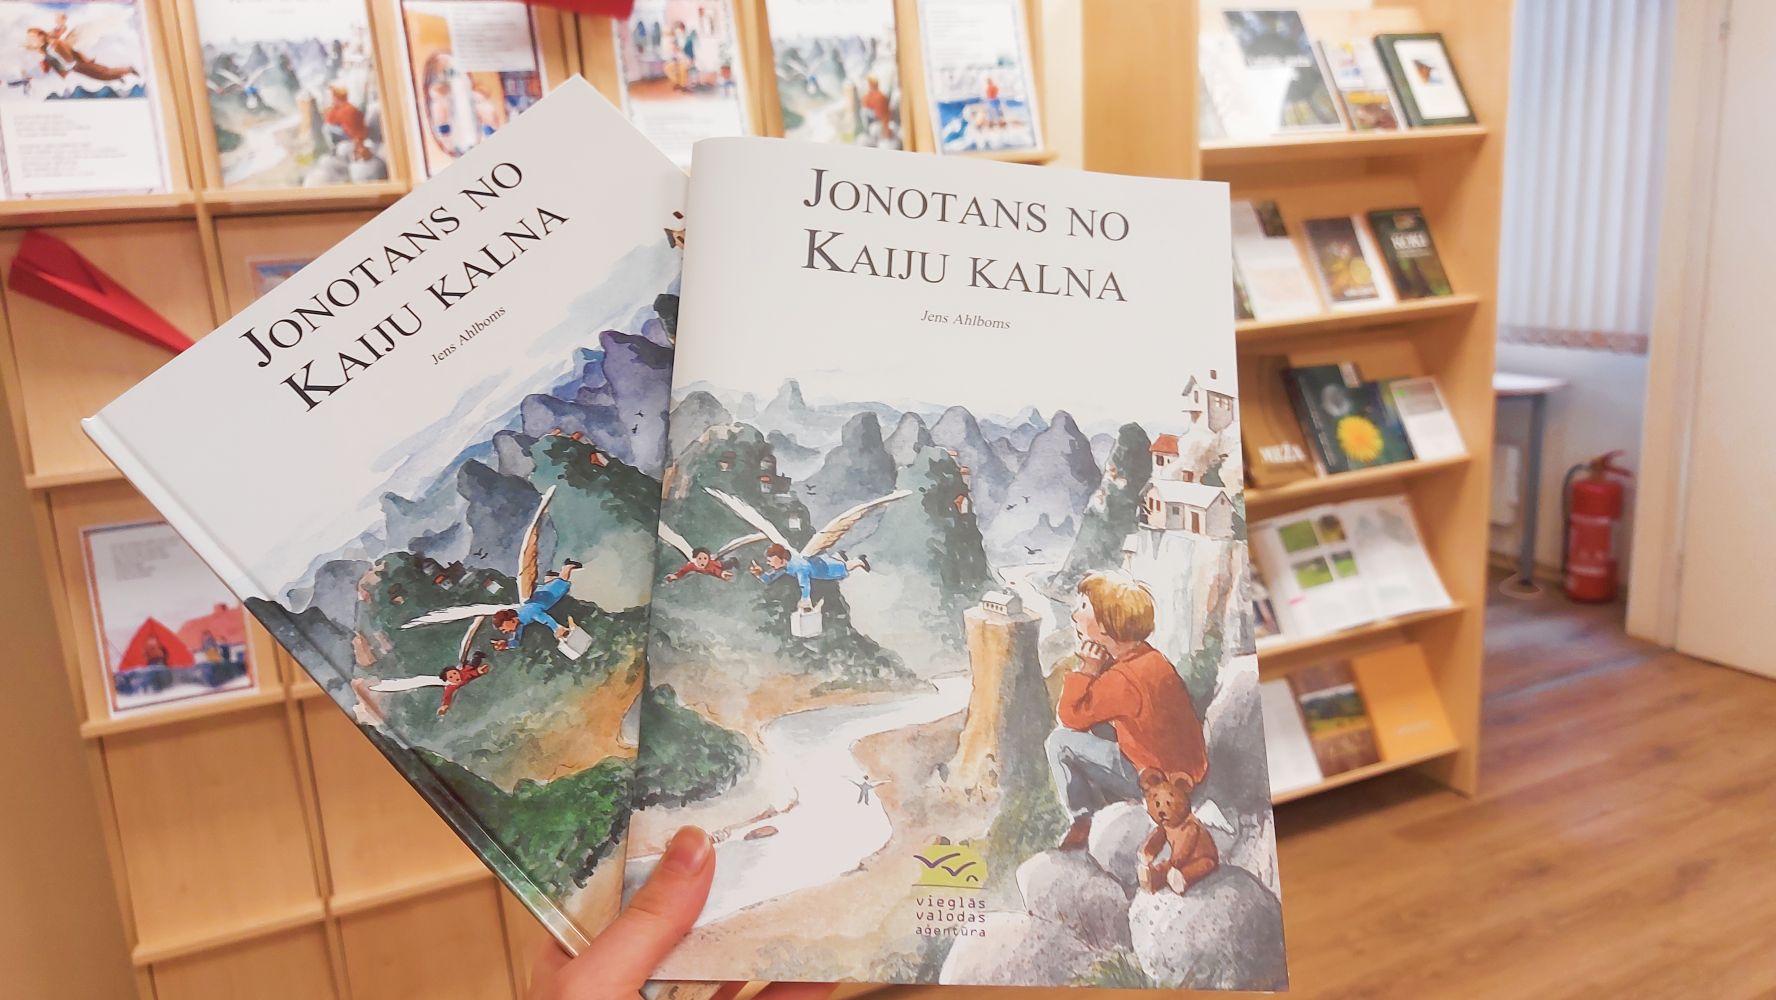 Grāmata "Jonotans no Kaiju kalna” oriģināls un izdevums vieglajā valodā